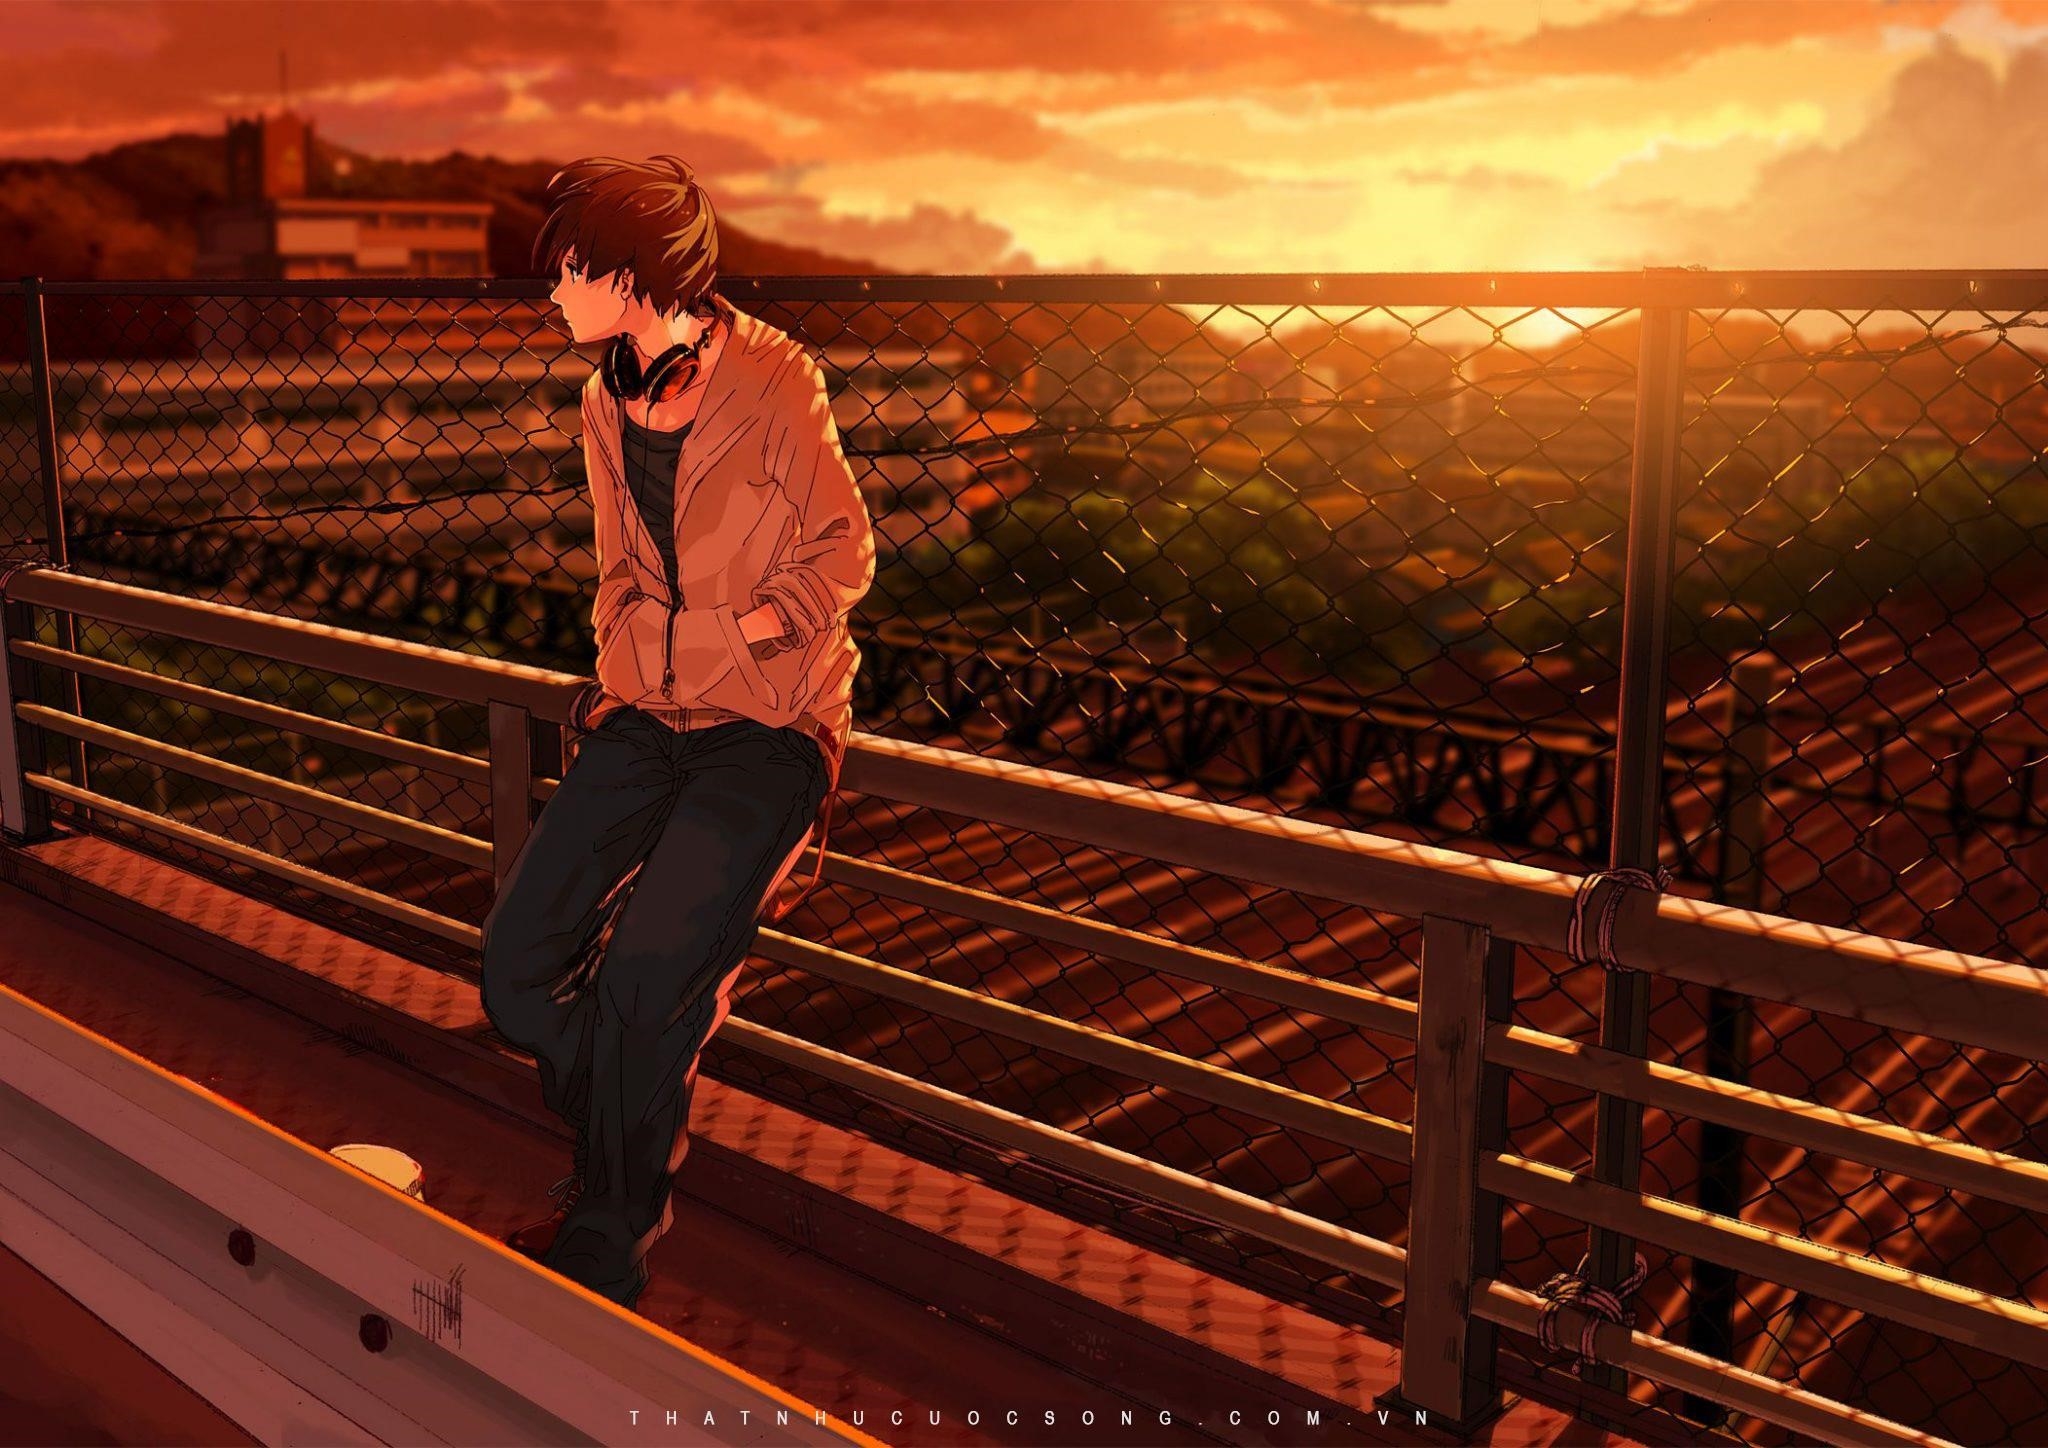 Ảnh anime cô đơn cho boy mang đến một cảm giác cô đơn và buồn bã, thể hiện sự cô đơn và sự tách biệt của chàng trai trong thế giới xung quanh, tạo nên một không gian đầy cảm xúc và sâu lắng.